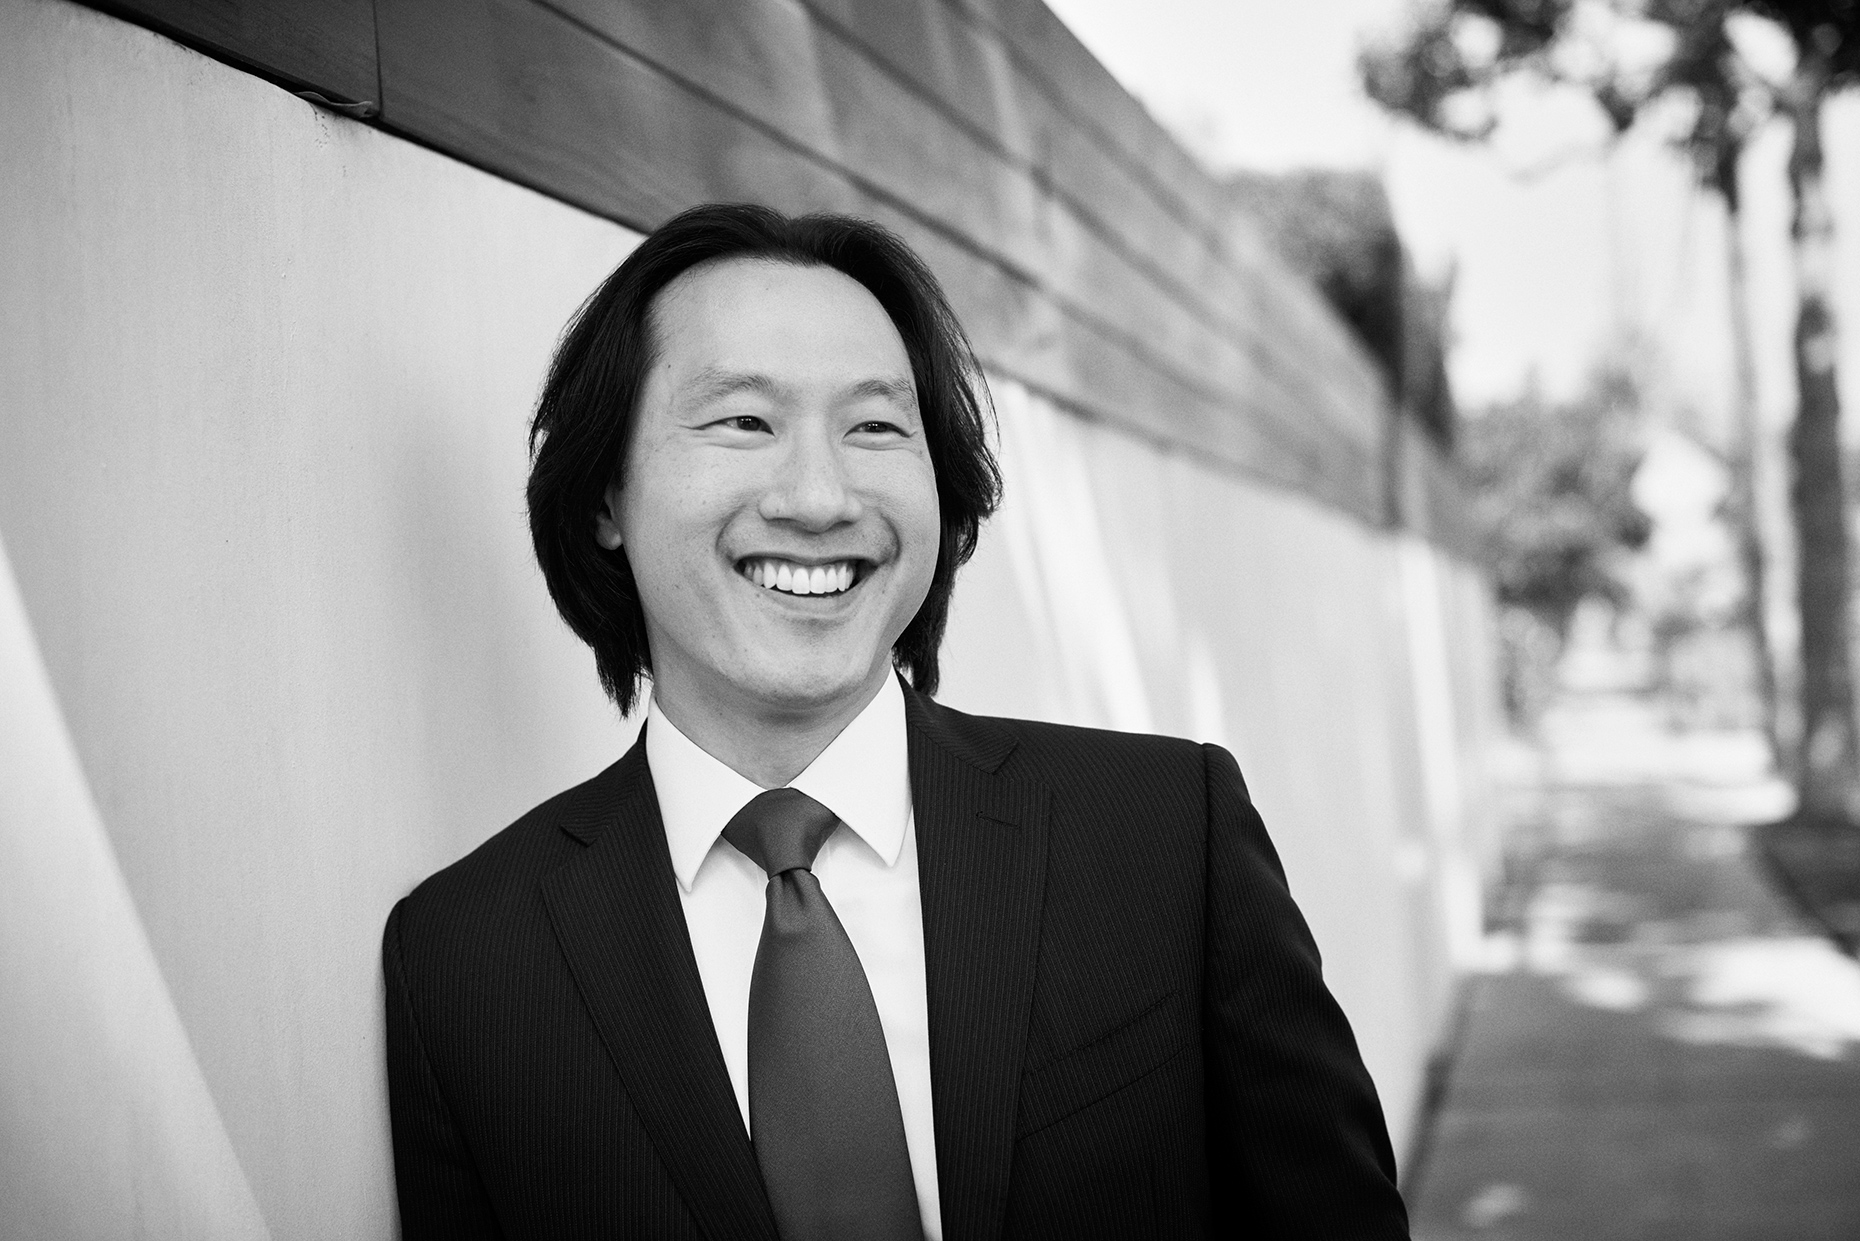 Smiling-outdoor-portrait-CEO-Los-Angeles-suit